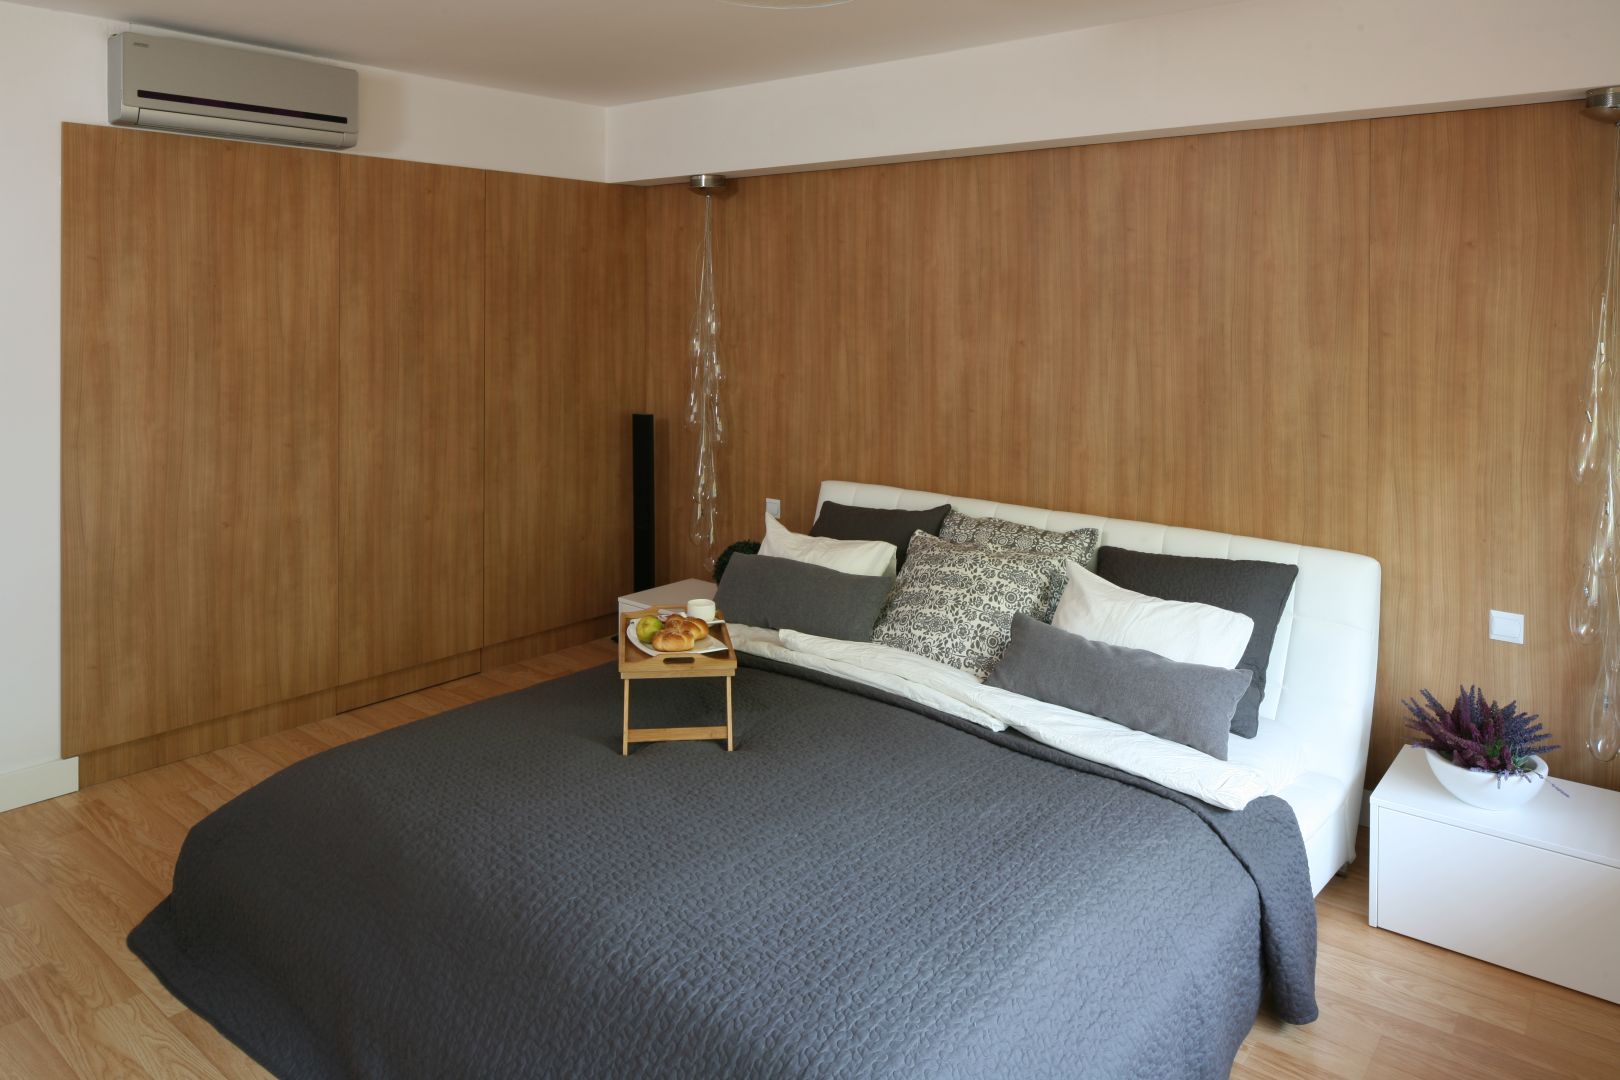 Nowoczesna sypialnia miała być przytulna, co udało się uzyskać dzięki ścianie wykończonej drewnem. Projekt: Małgorzata Błaszczak. Fot. Bartosz Jarosz 